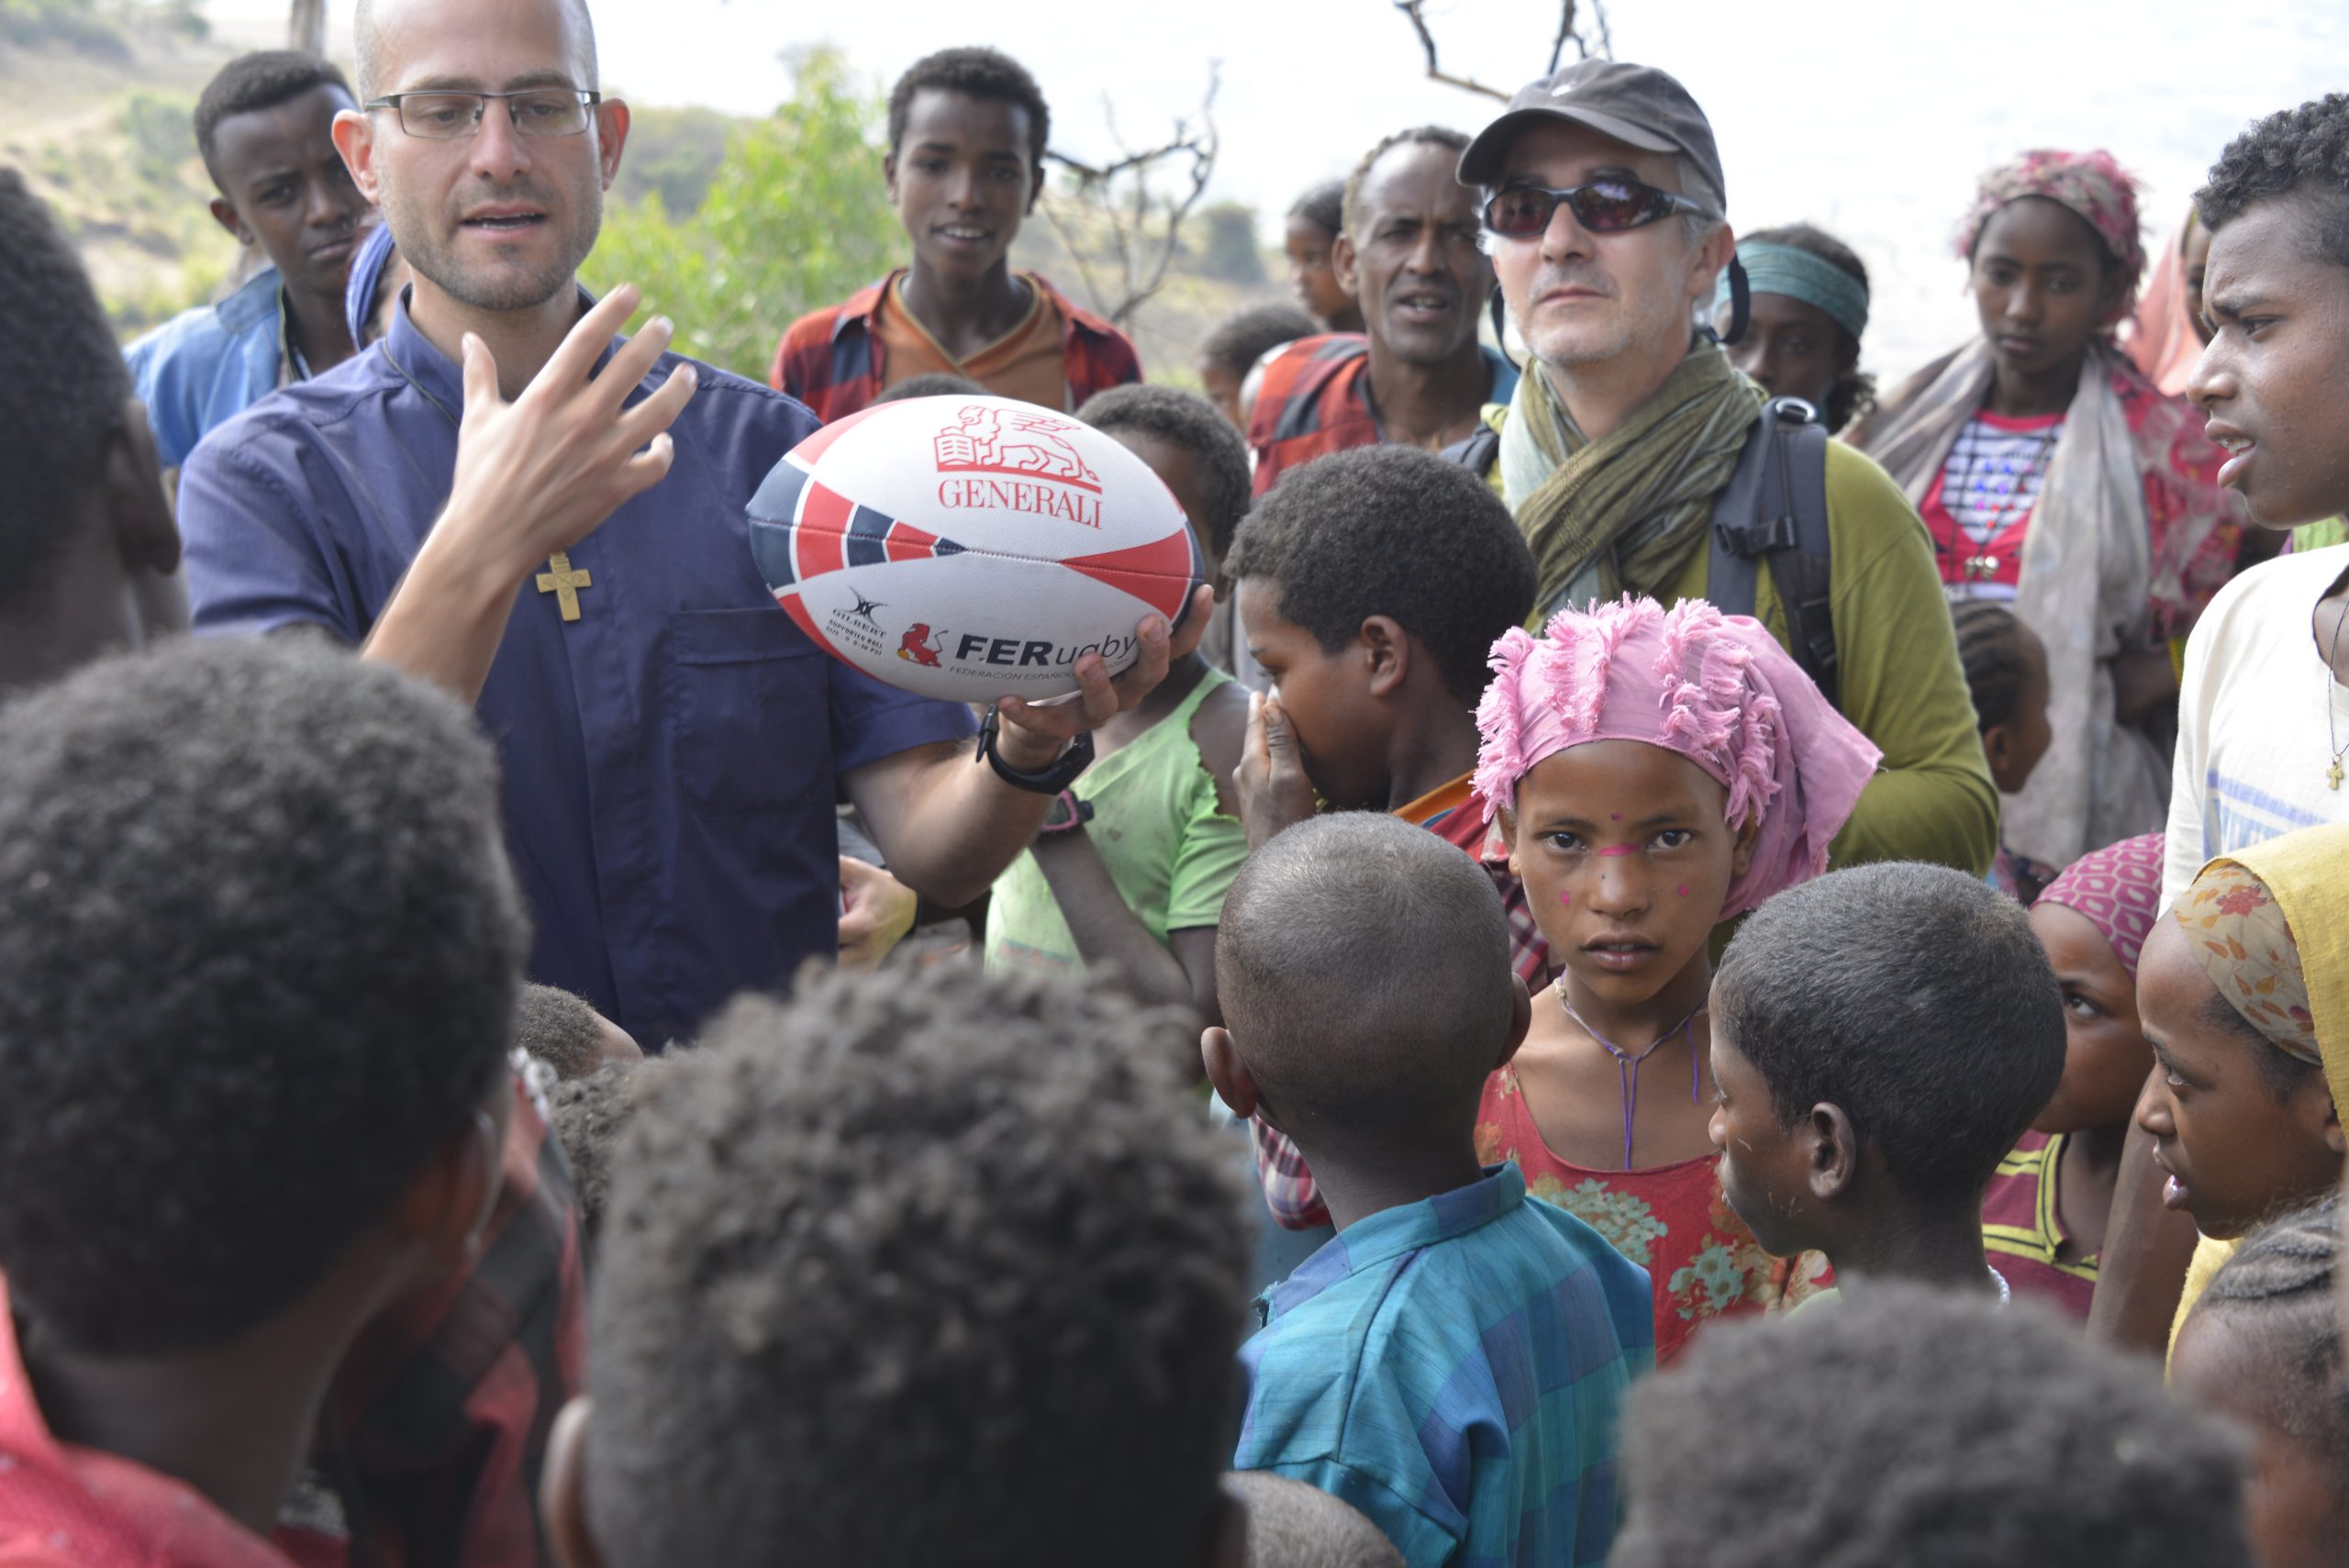 Los fotógrafos Joaquín Rivero y José Martín llevan el rugby español a Etiopía